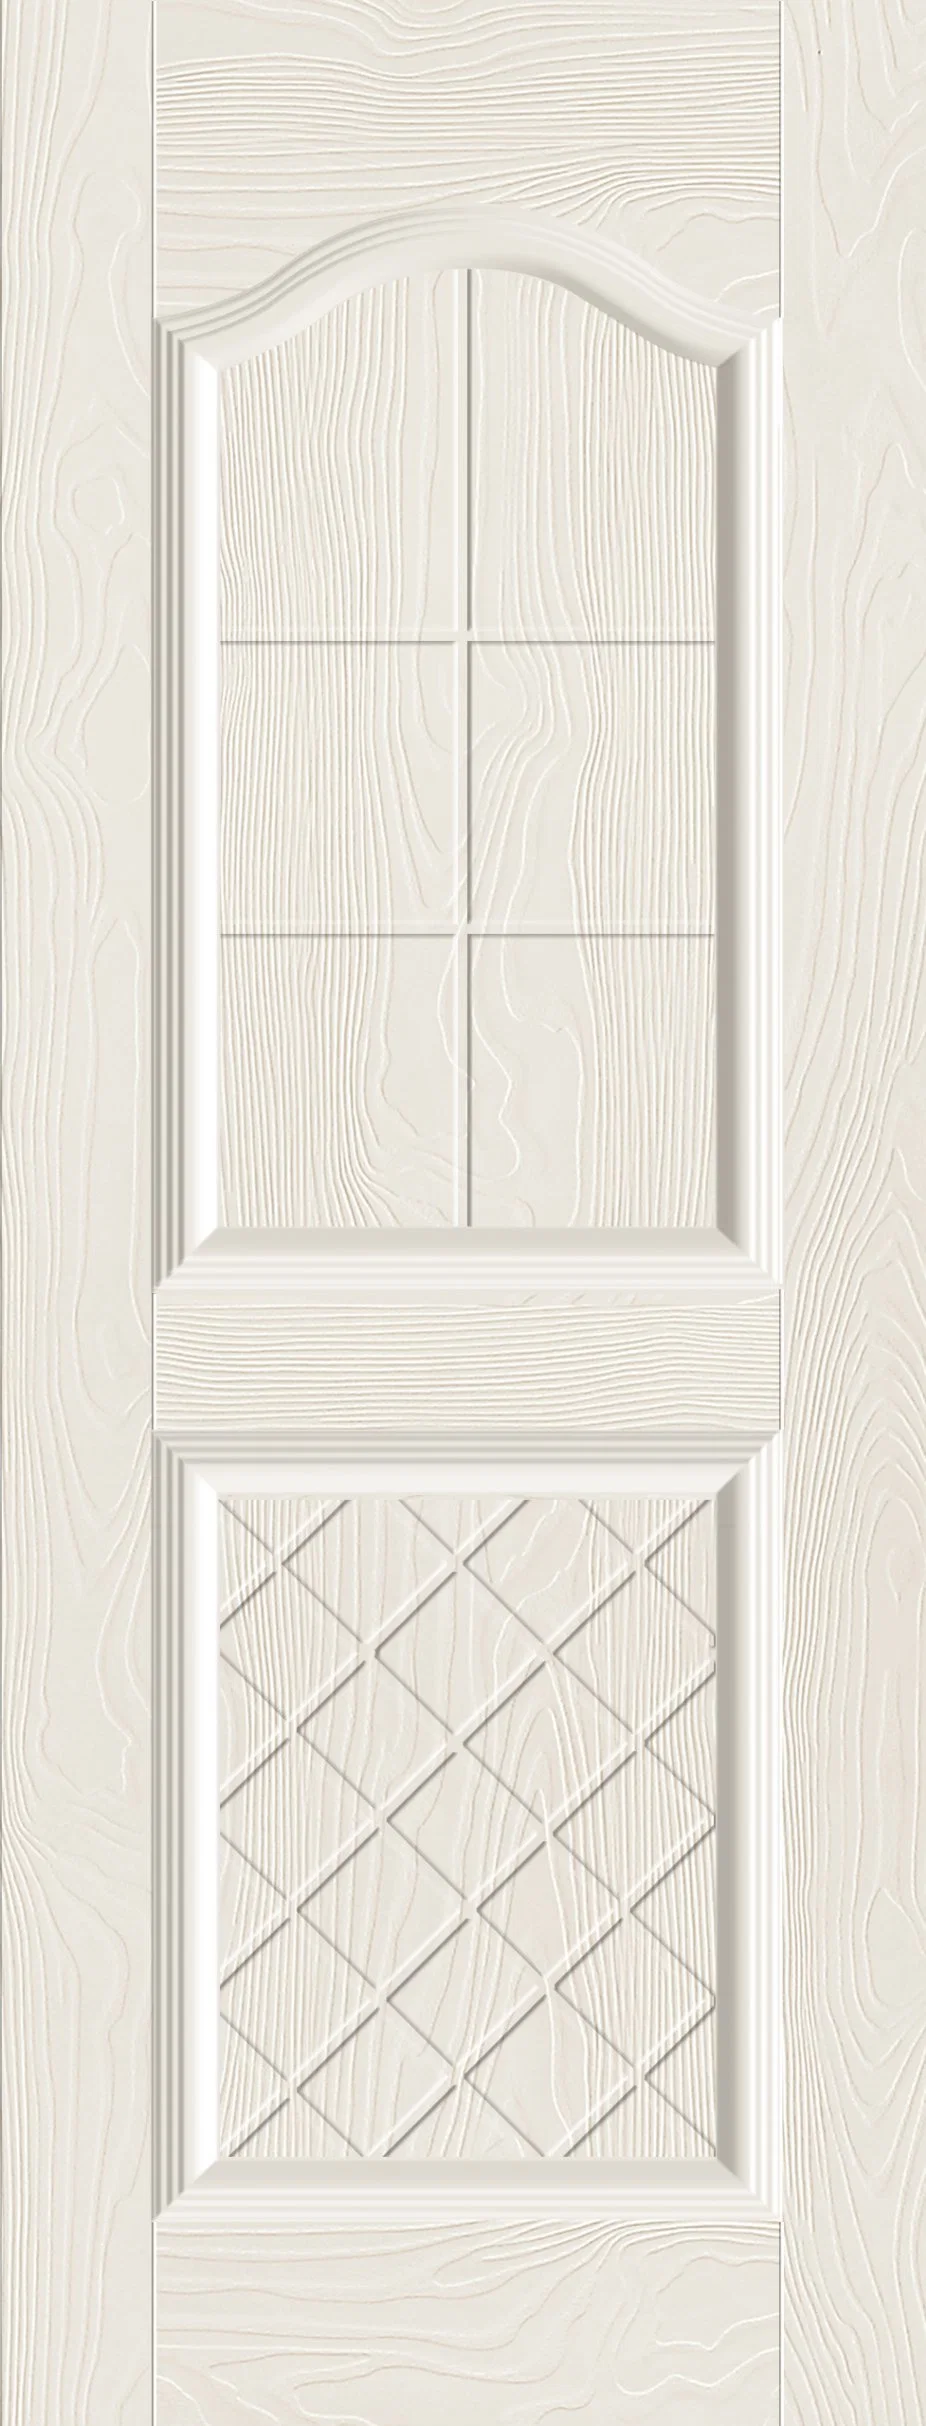 3mm Interior Plywood Door Panel PVC Door Skin Decoration for Home